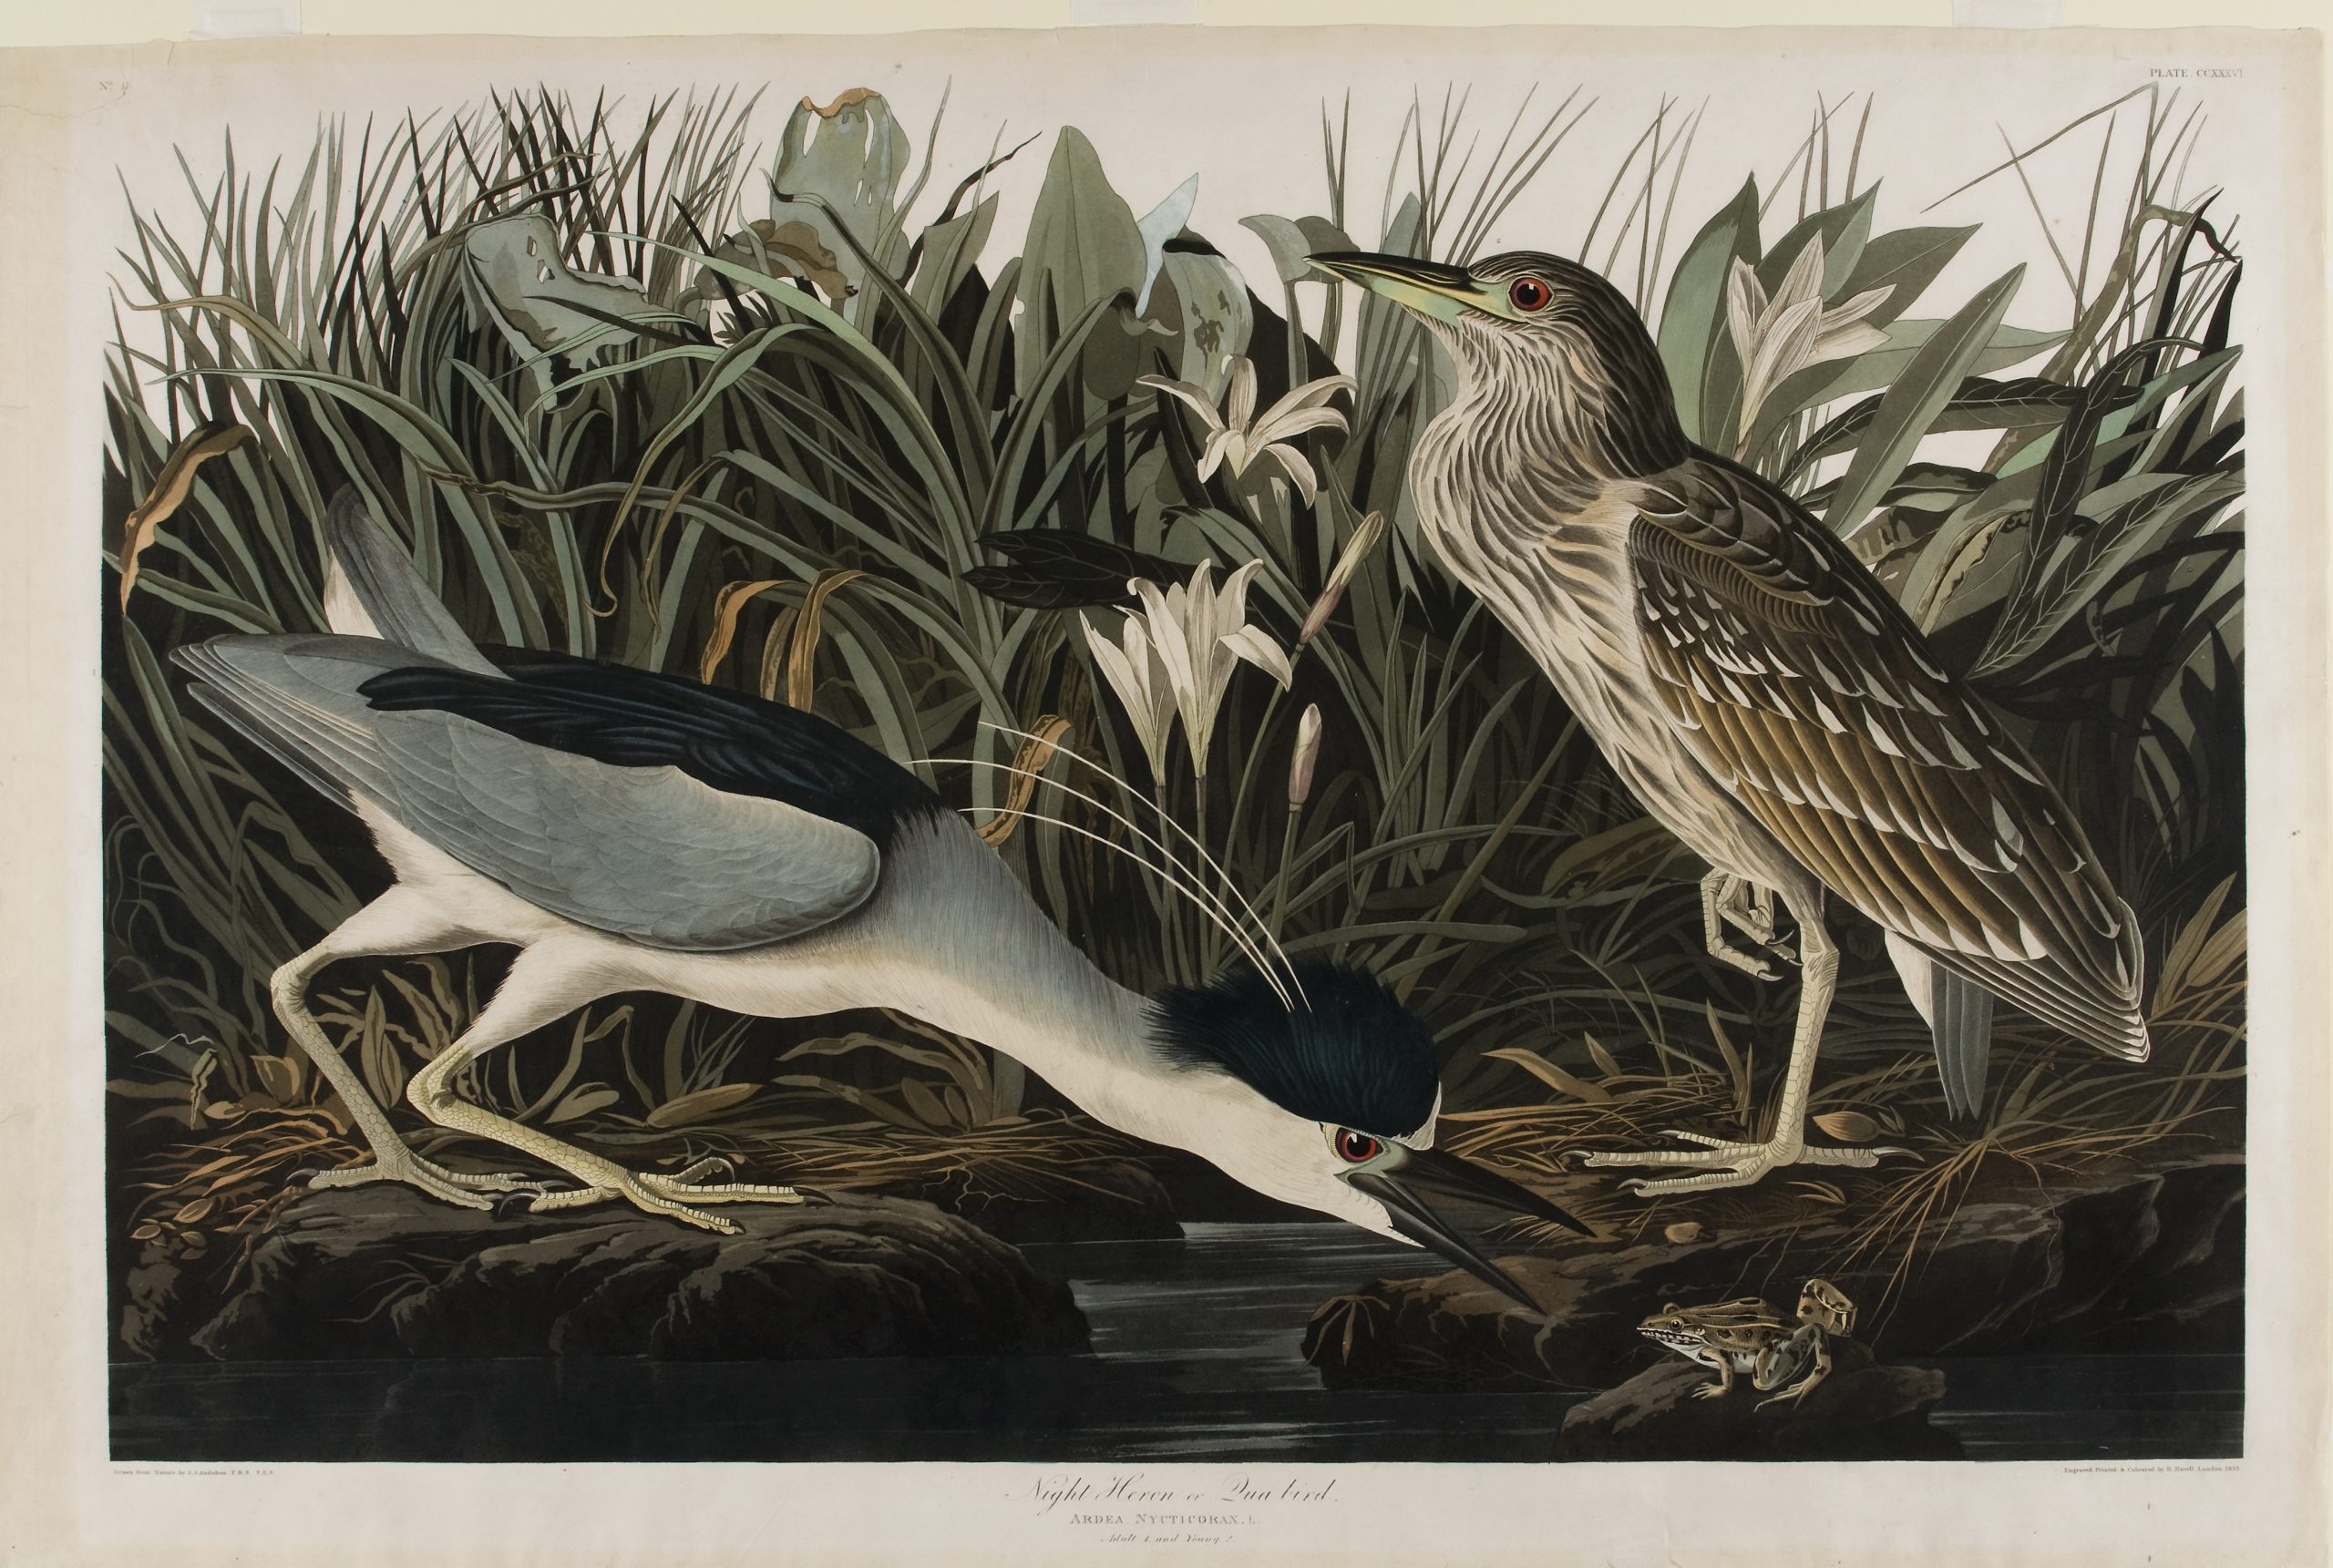 Night Heron or Qua bird, 1860